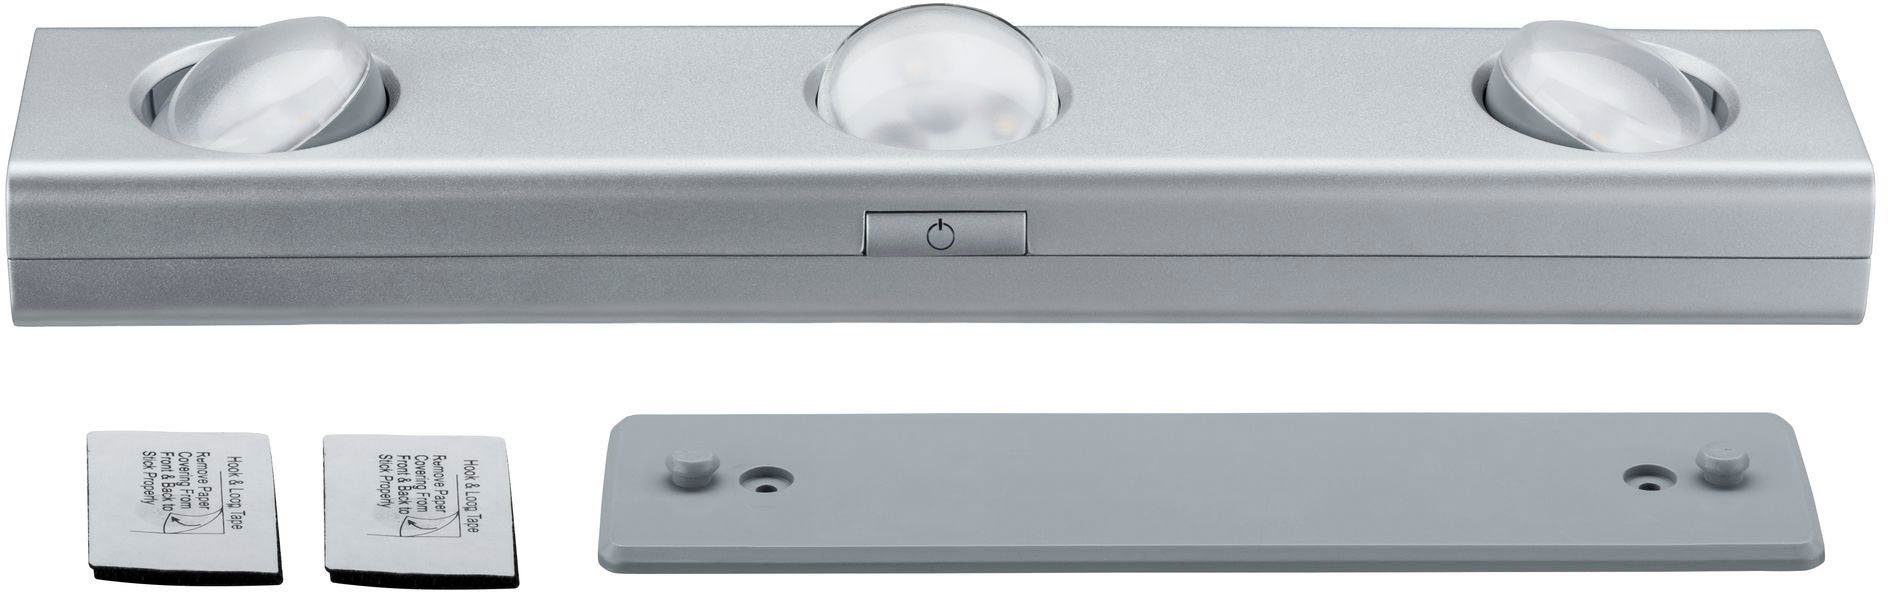 Paulmann Unterschrankleuchte dimmbar ohne LED LED 3er-Spot dimmbar Jiggle Leuchtmittel, batteriebetrieben batteriebetrieben, 3er-Spot Warmweiß, Jiggle